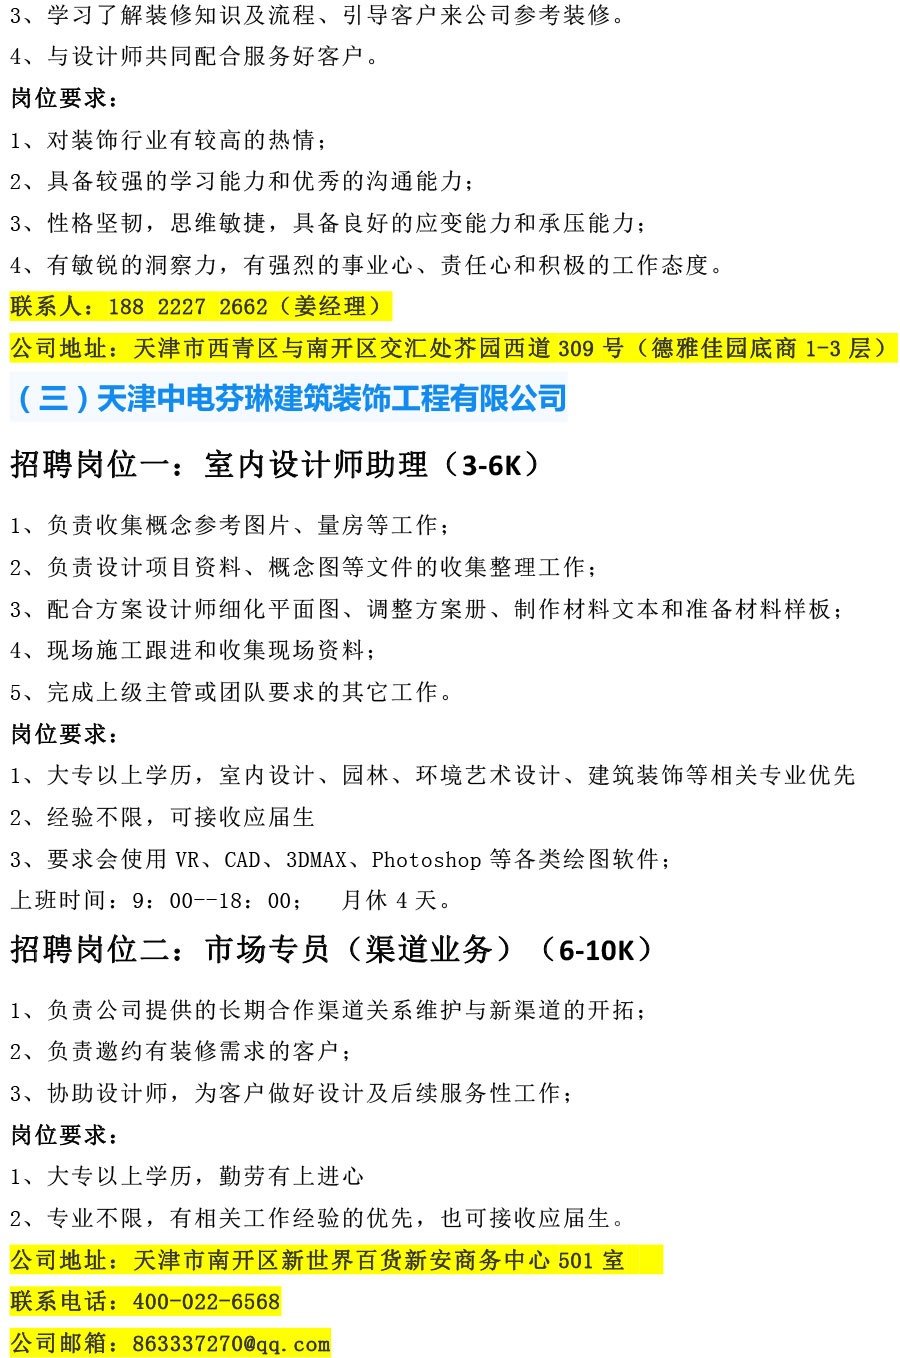 天津工艺美术职业学院2021年12月招聘信息-4.jpg